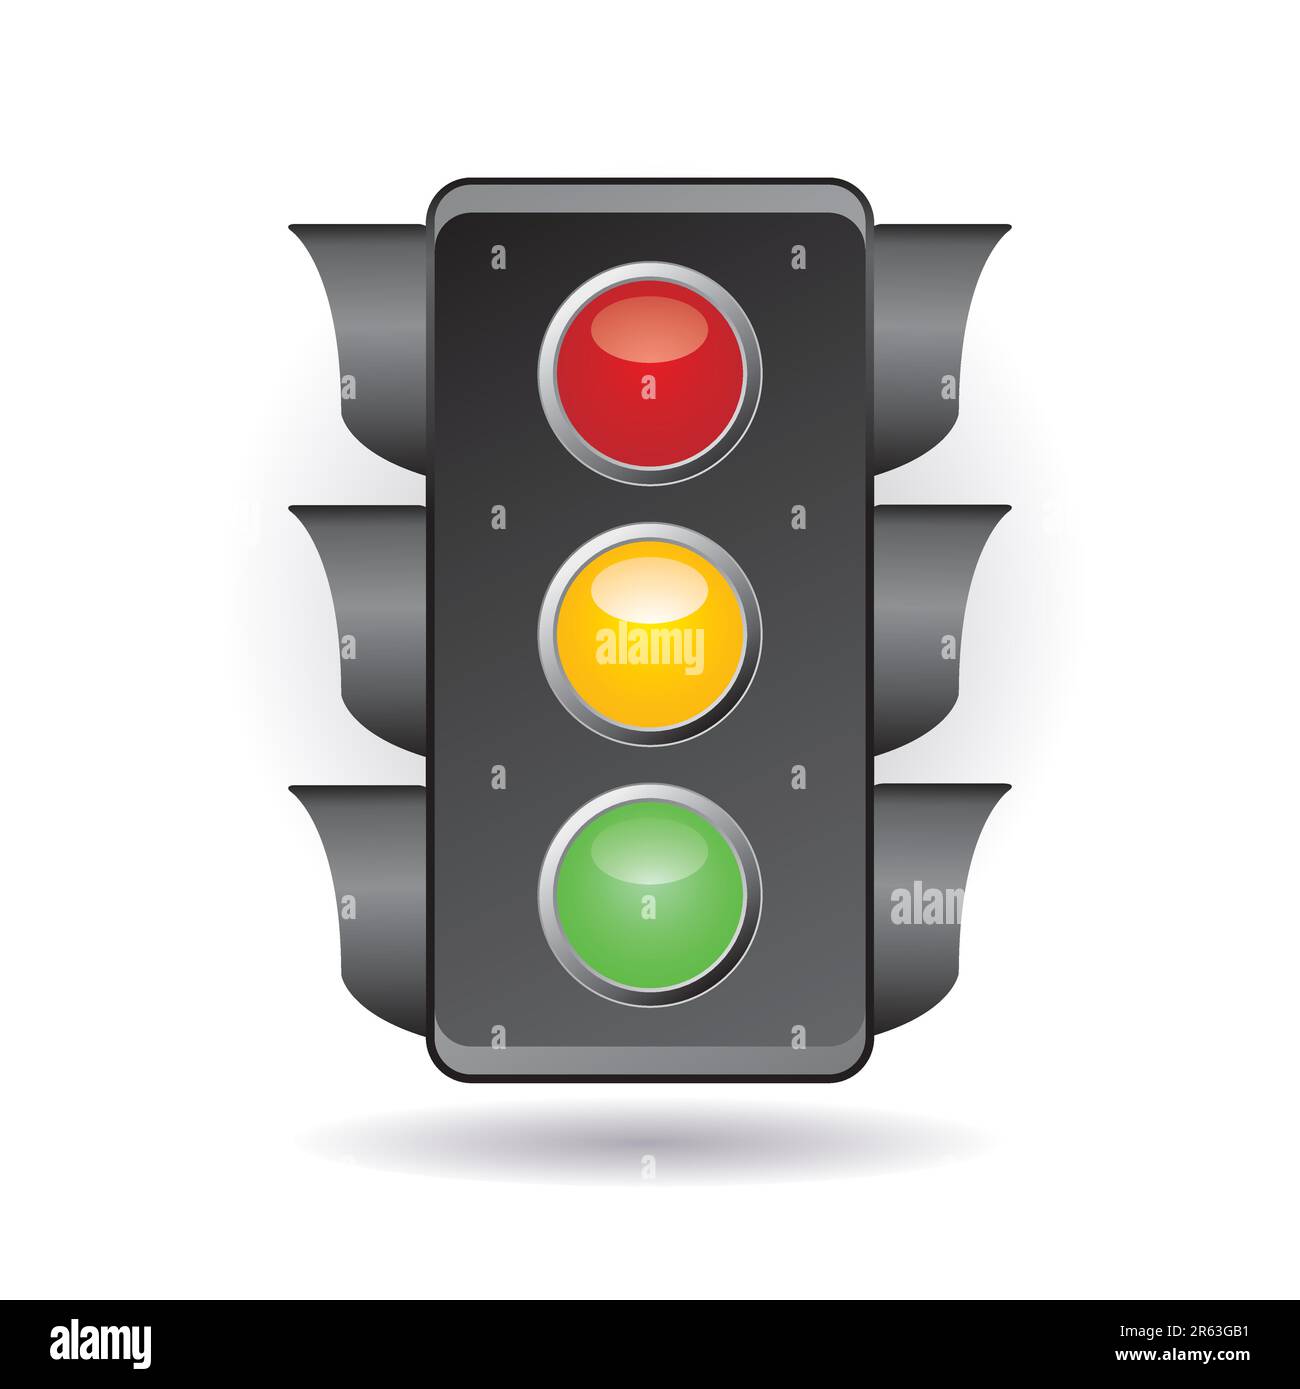 traffic light Stock Vector